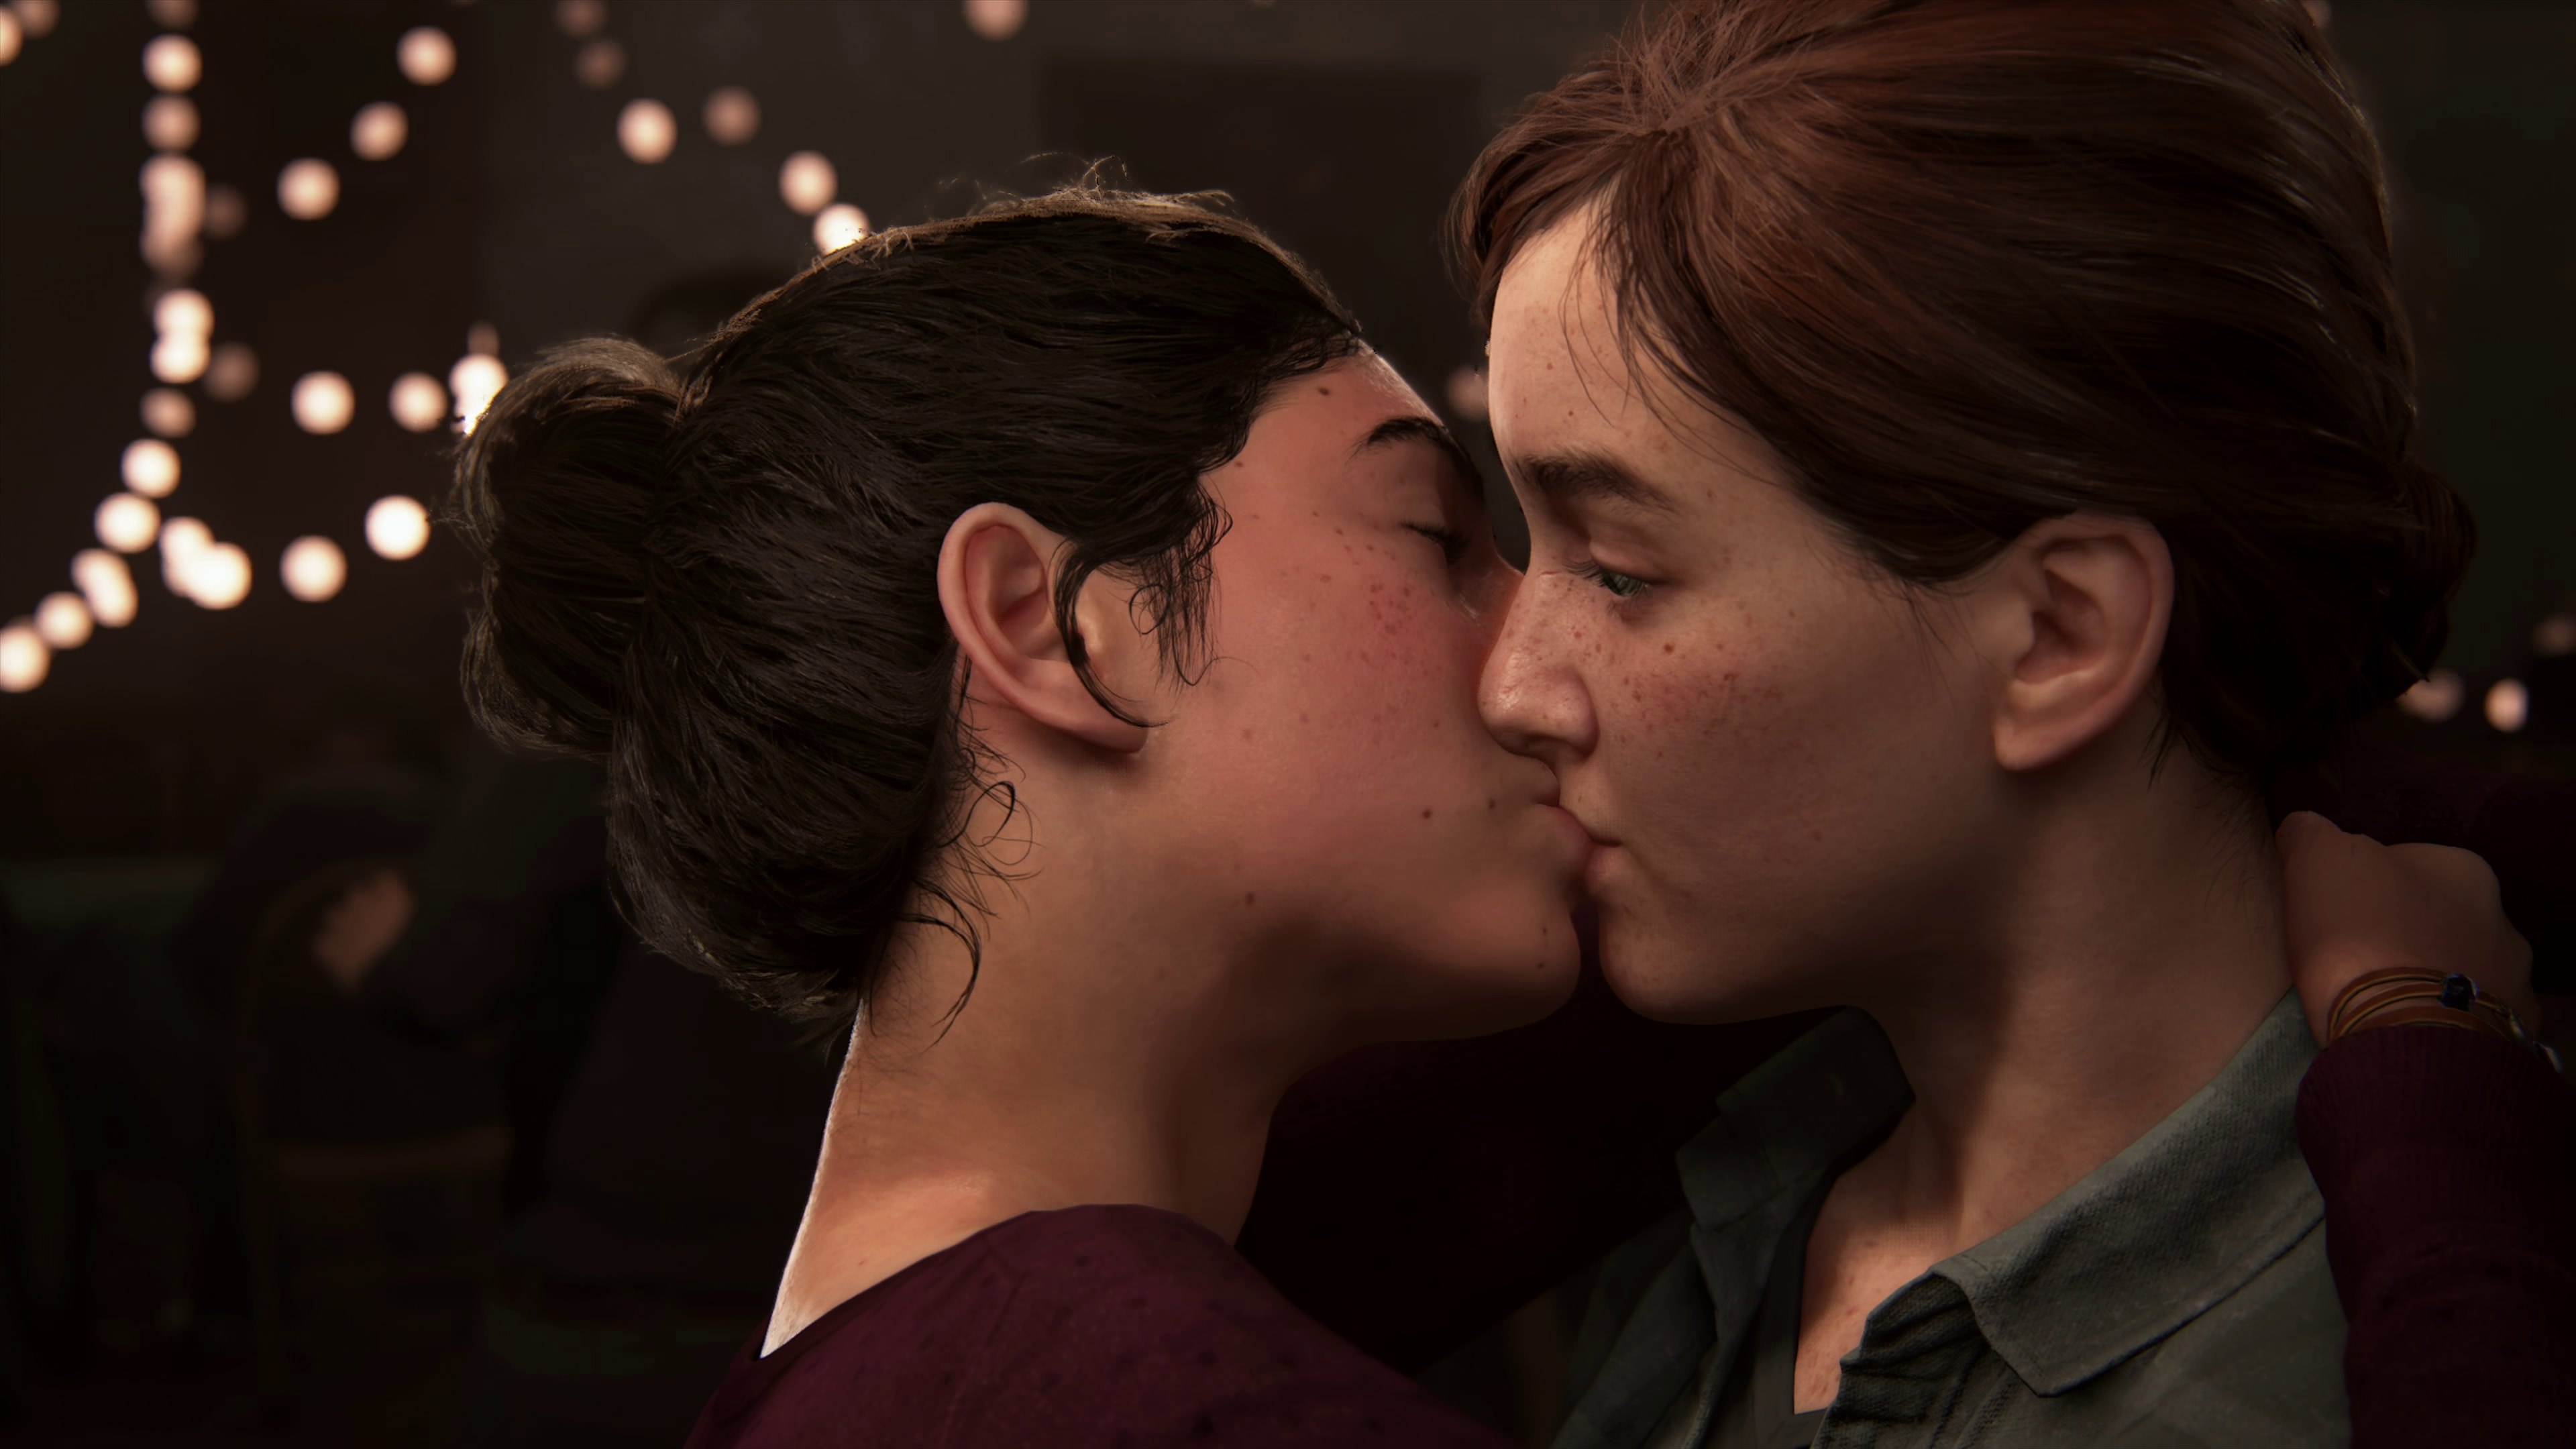 Lesbian dare game